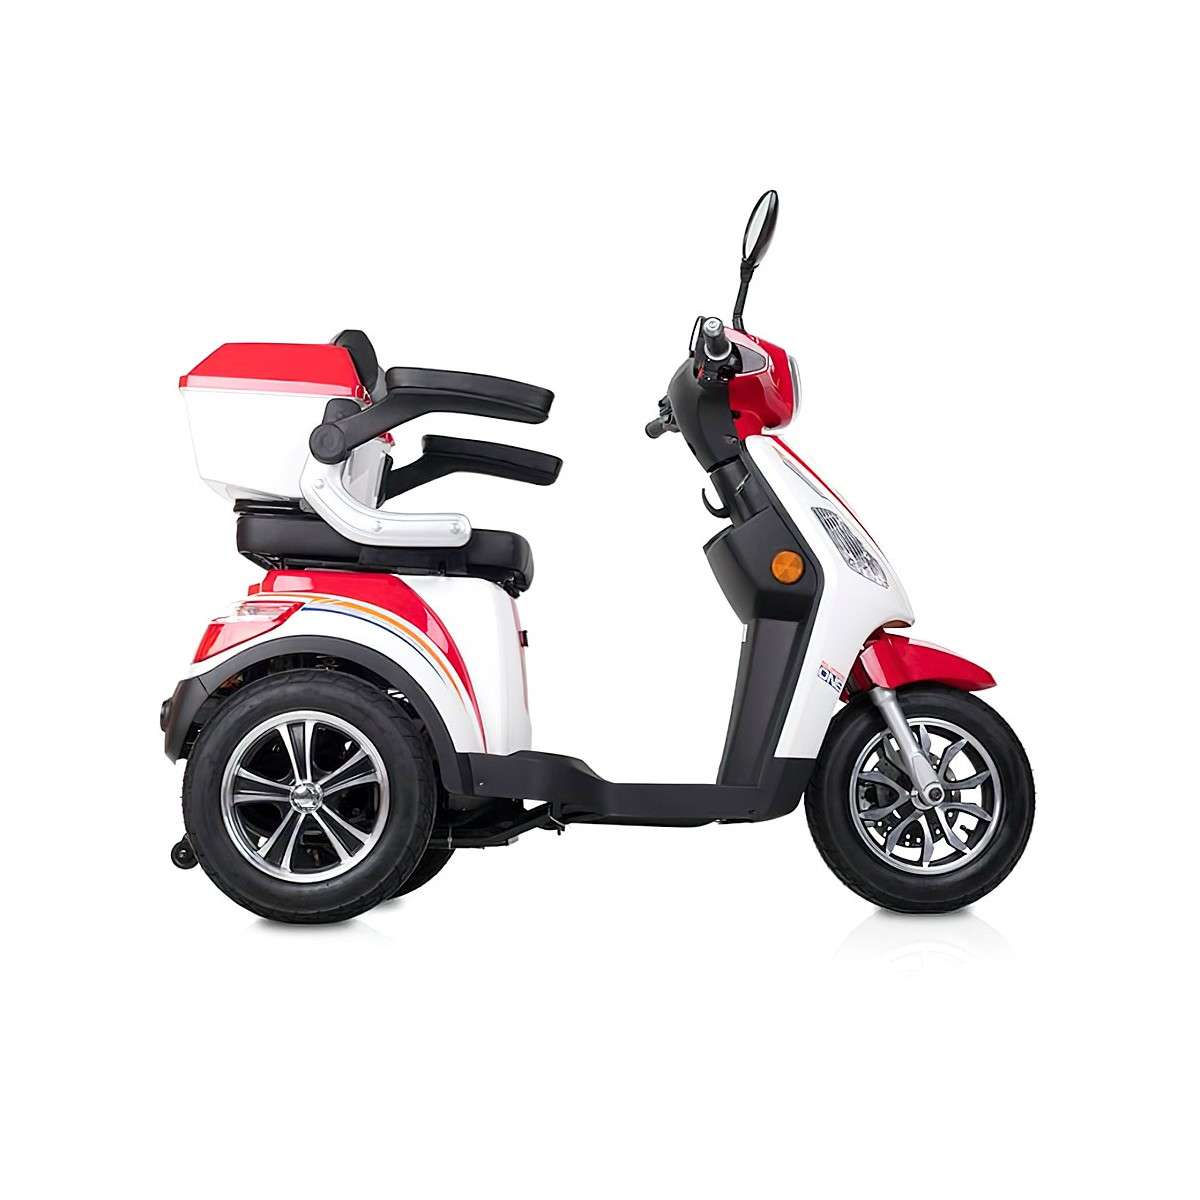 Scooter de 3 ruedas Madeira - Detalle 2